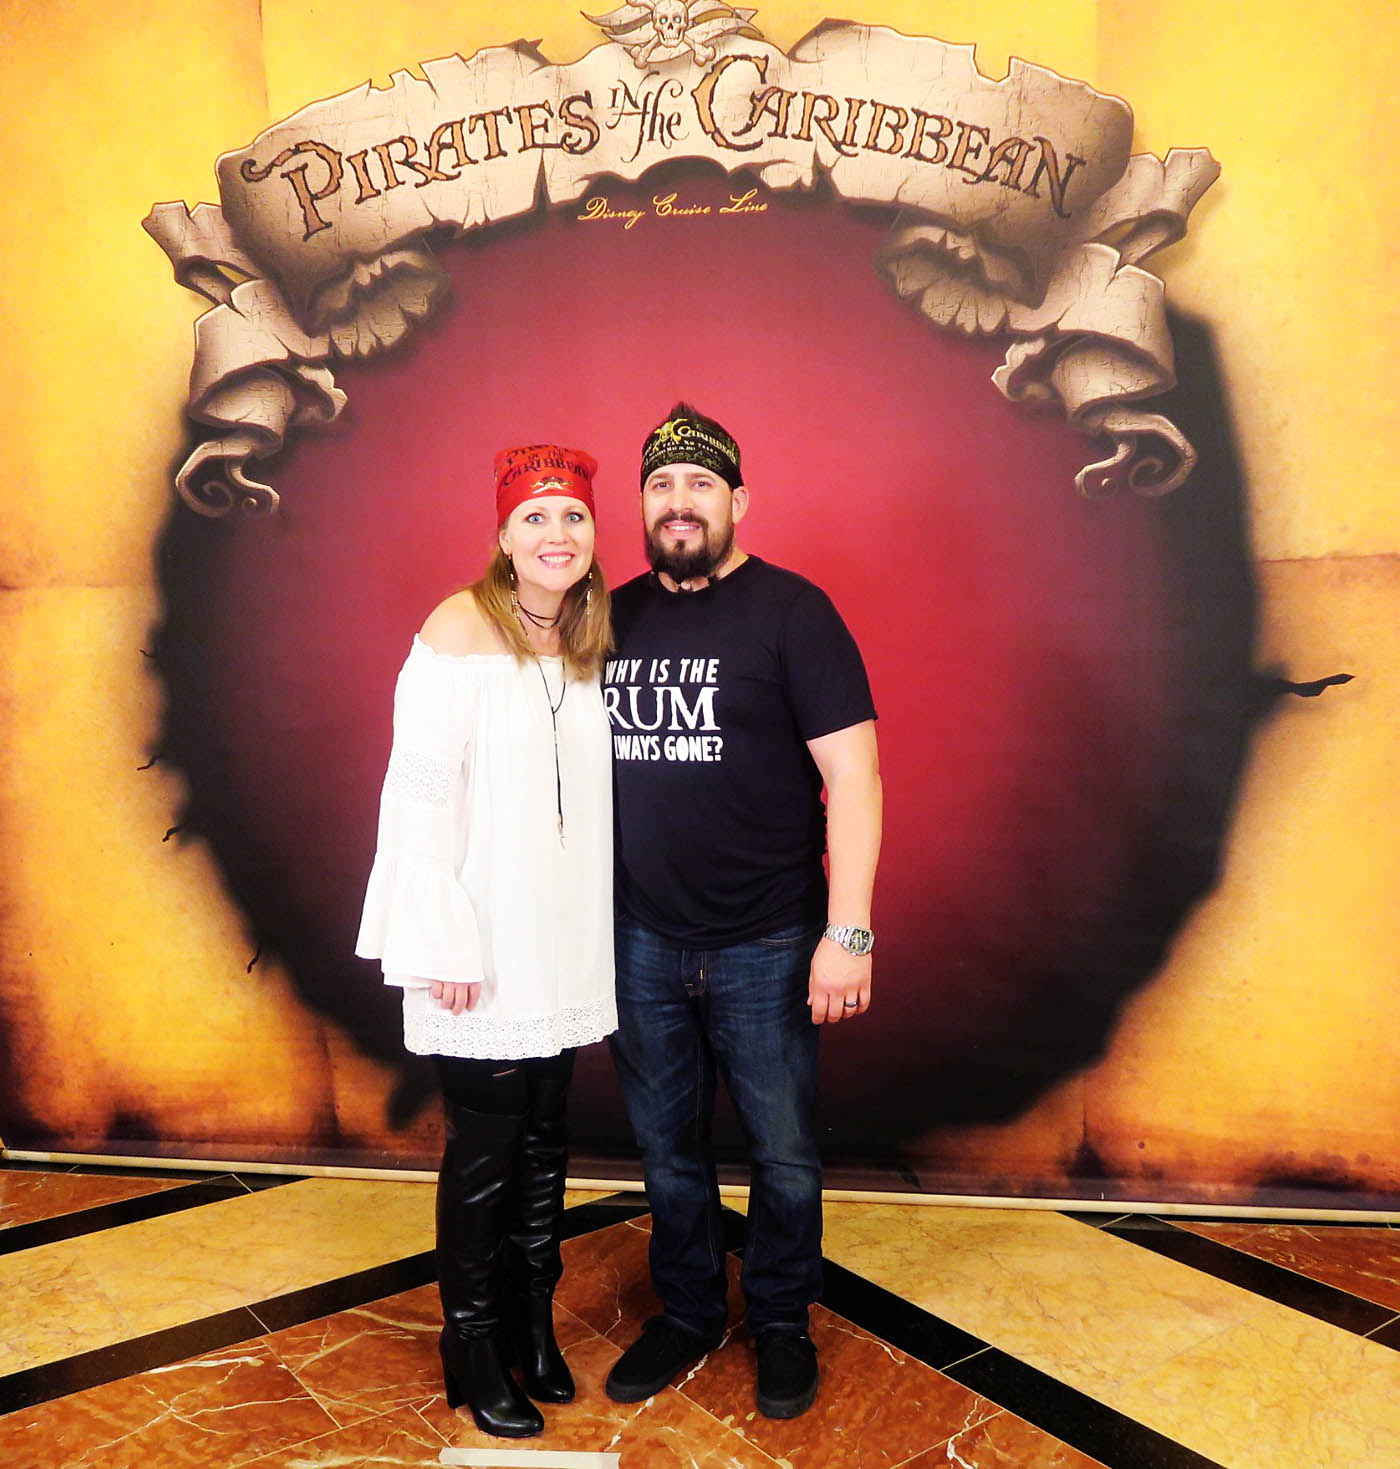 Pirates  Disney cruise shirts, Disney silhouettes, Disney fun